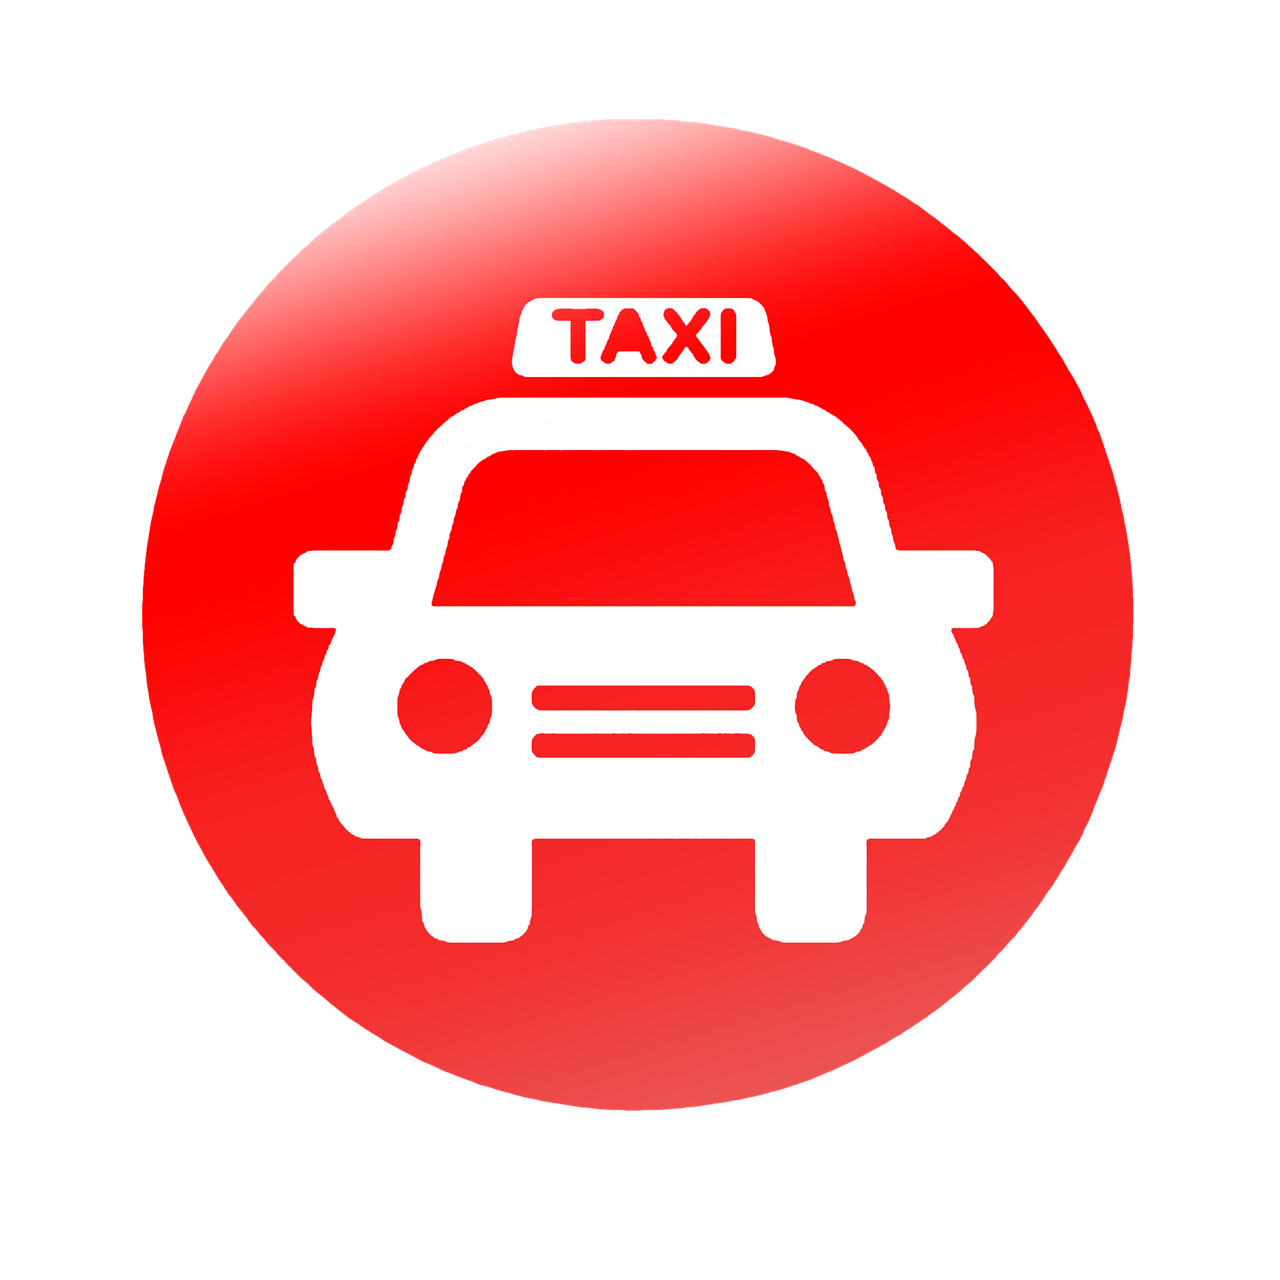 taxi computer icon vector free photo